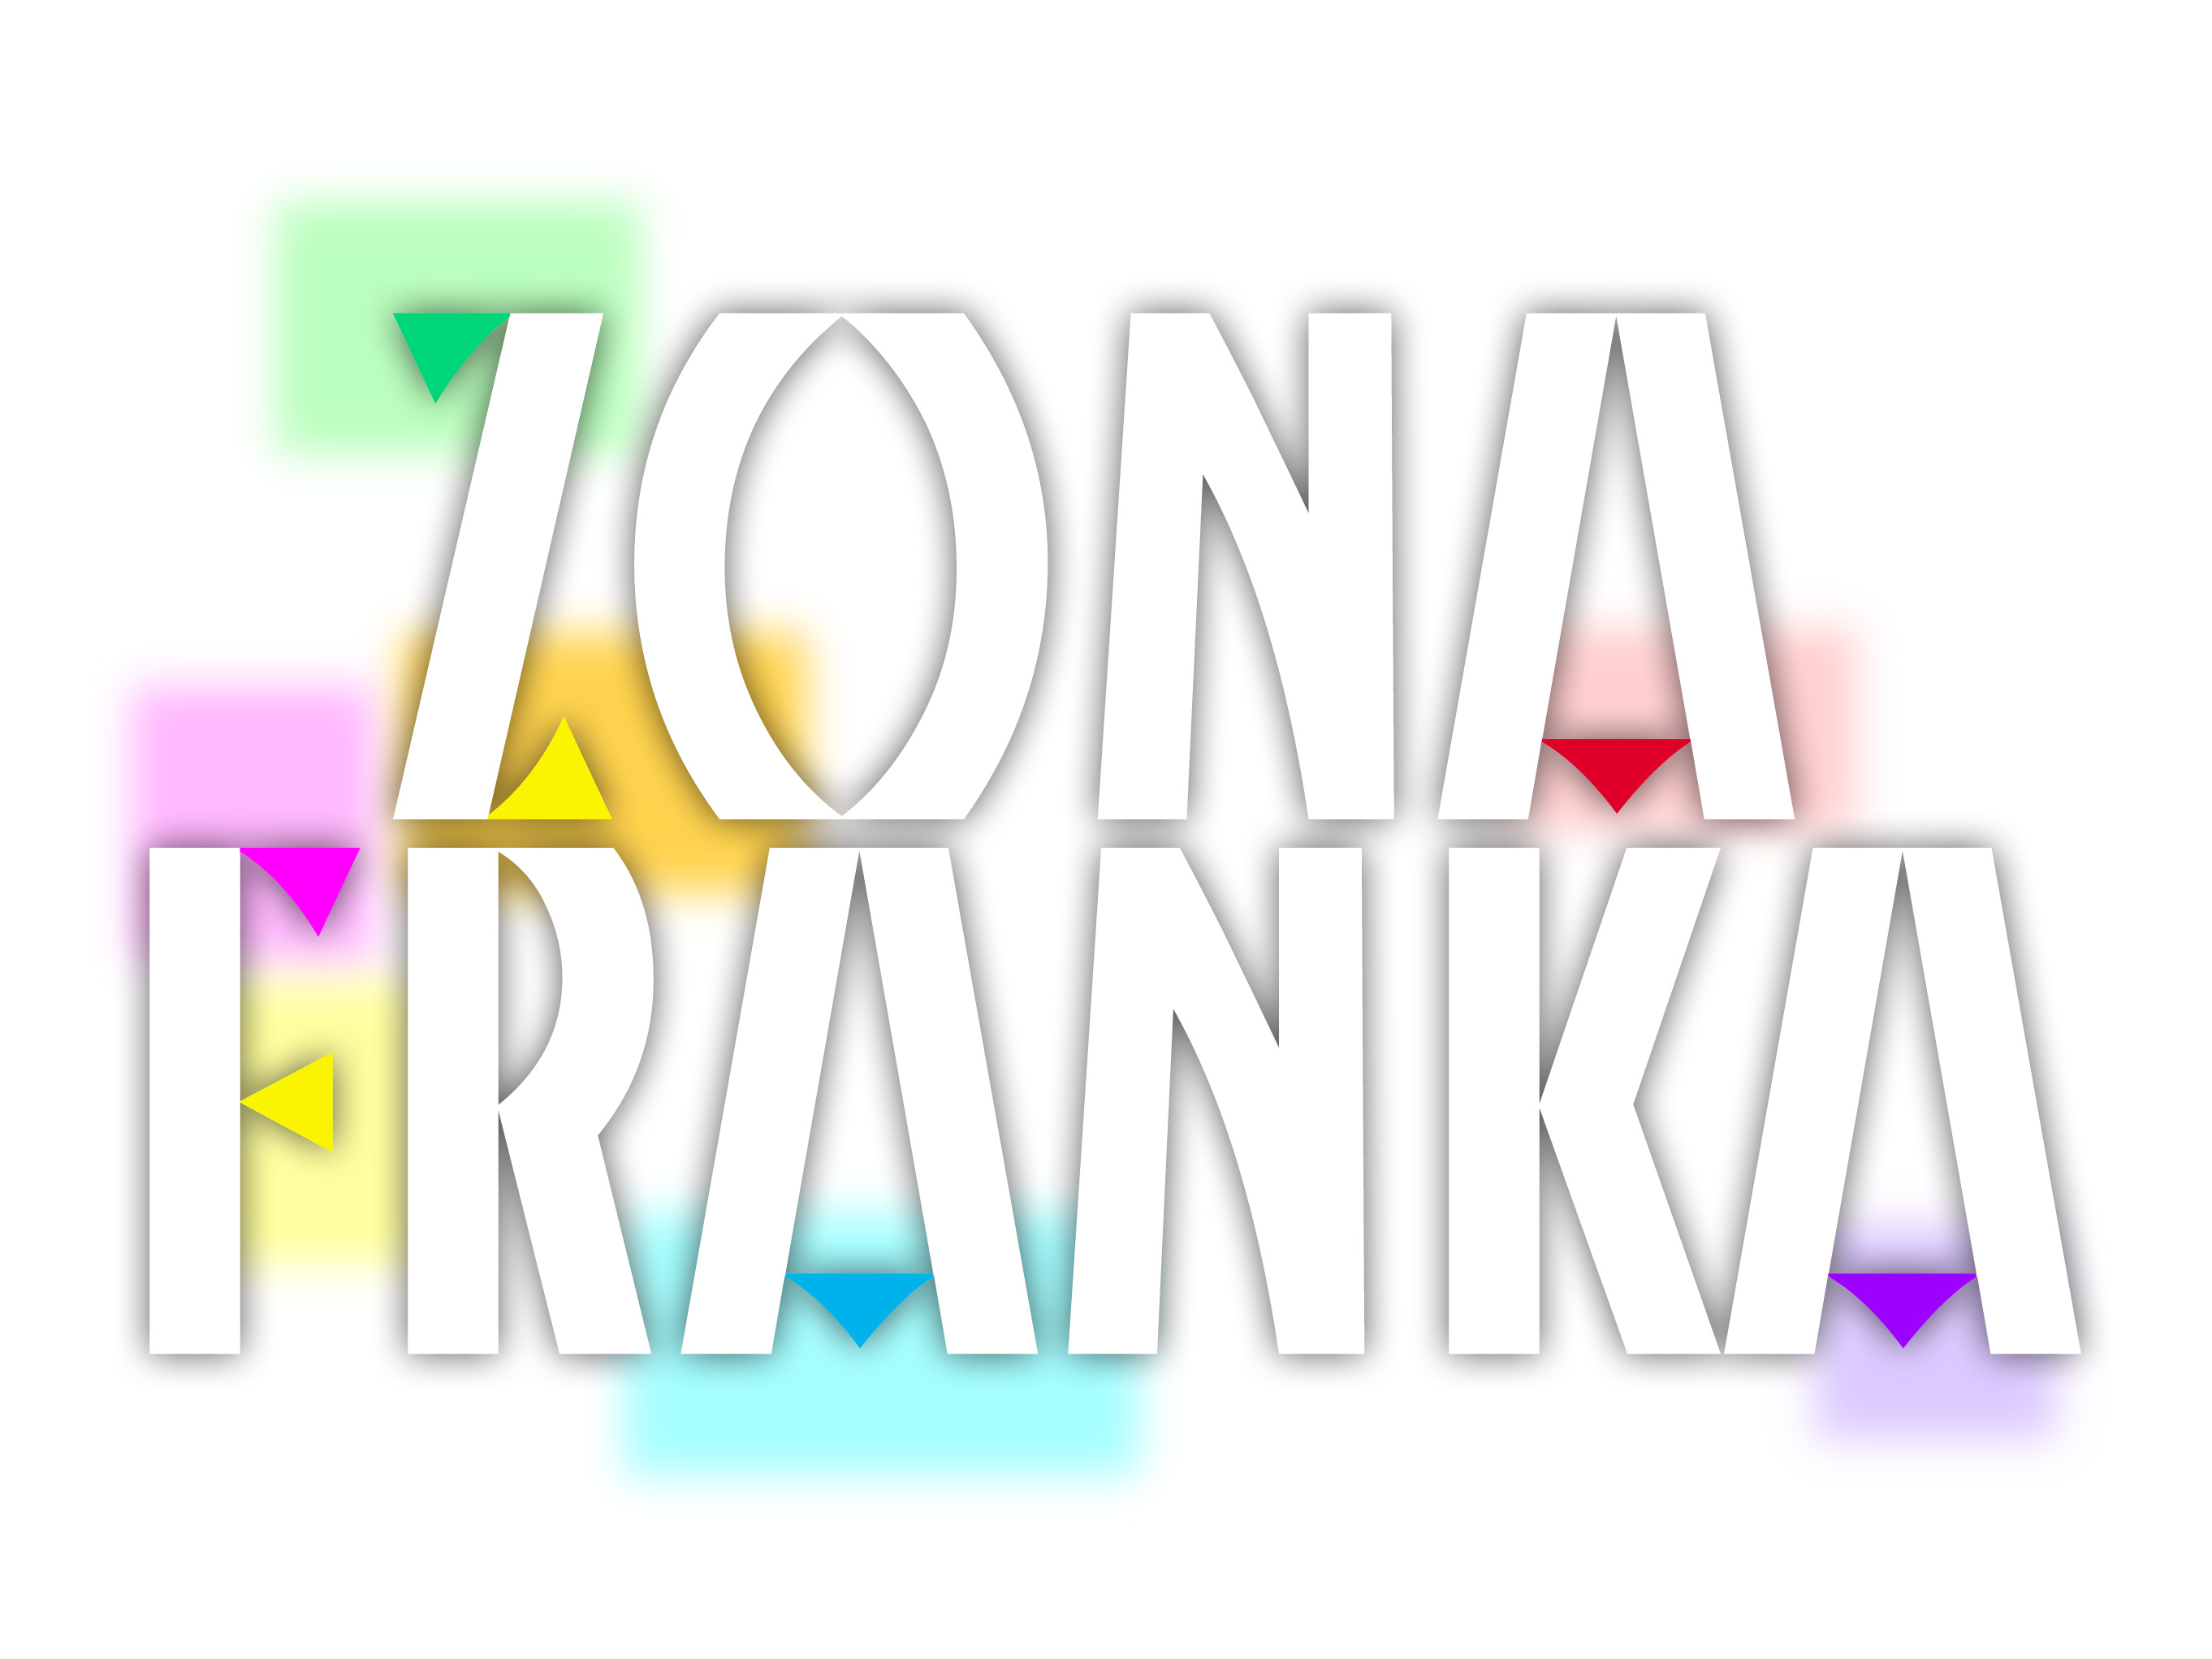 LogoZonaFranka2001.jpg (355833 byte)